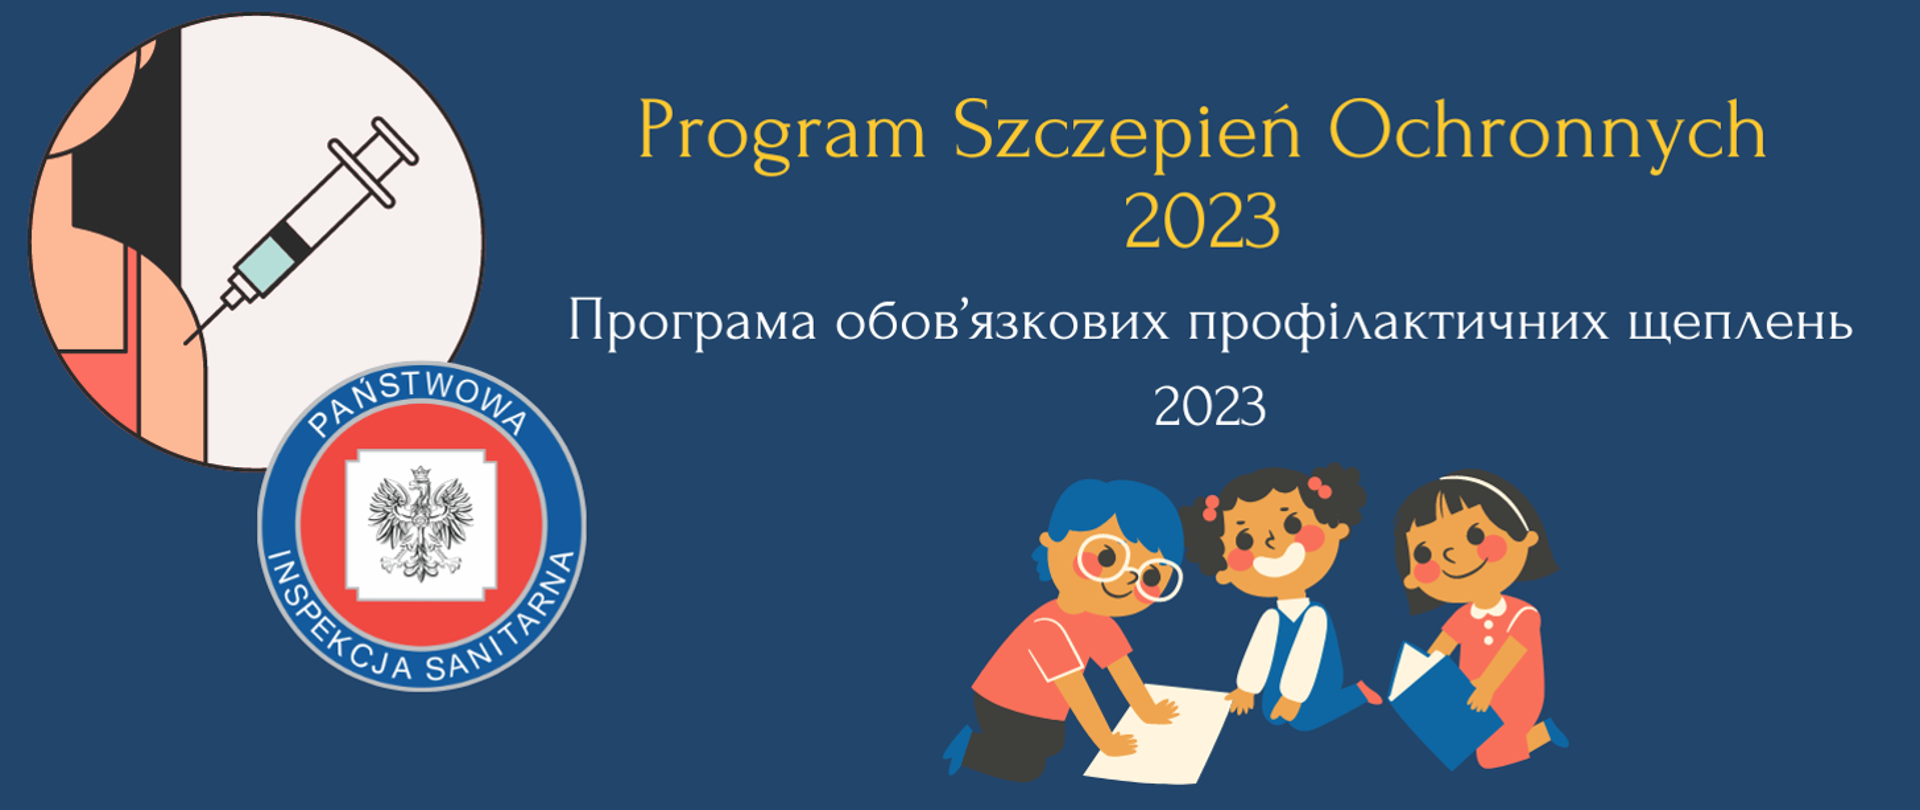 Program Szczepień Ochronnych na 2023rok.